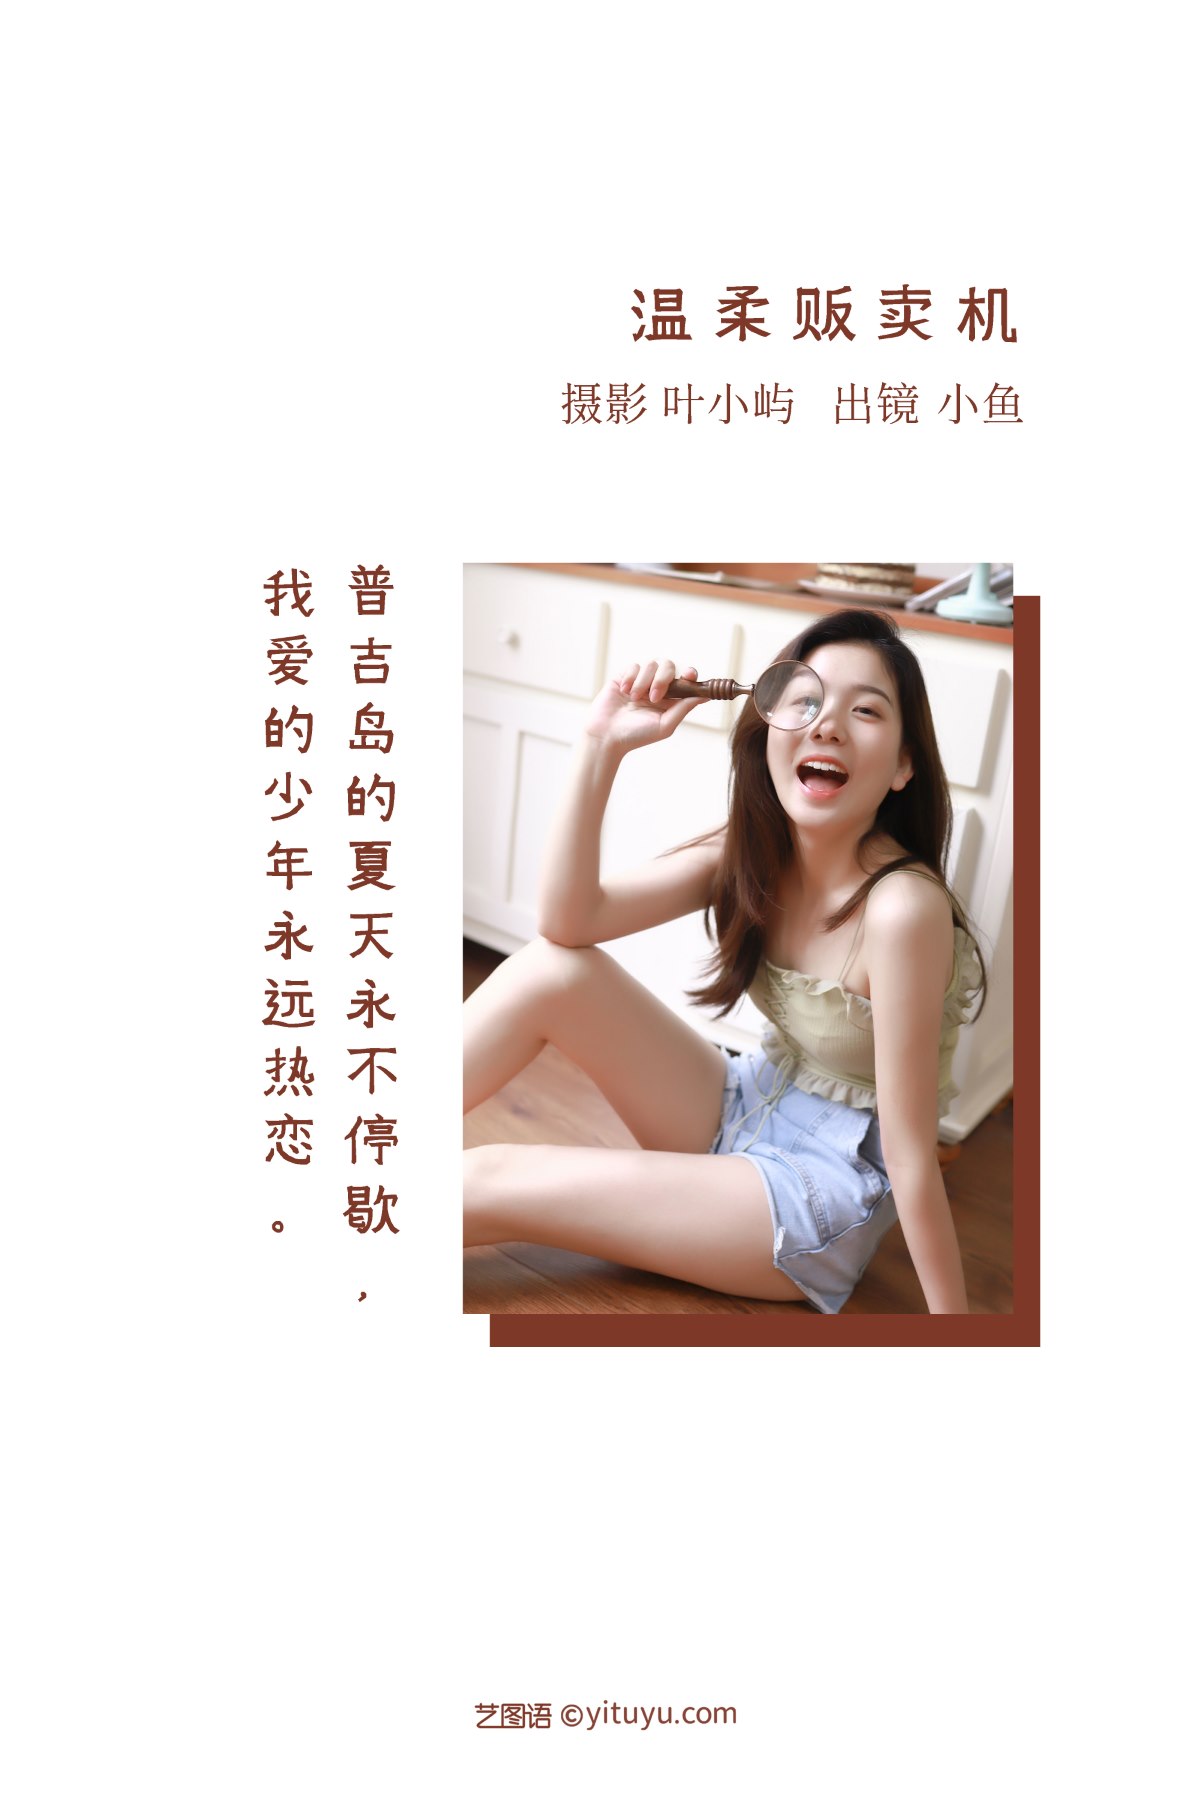 YiTuYu艺图语 Vol 2367 Zha Mian Bi Mu Yu 0001 8856359463.jpg